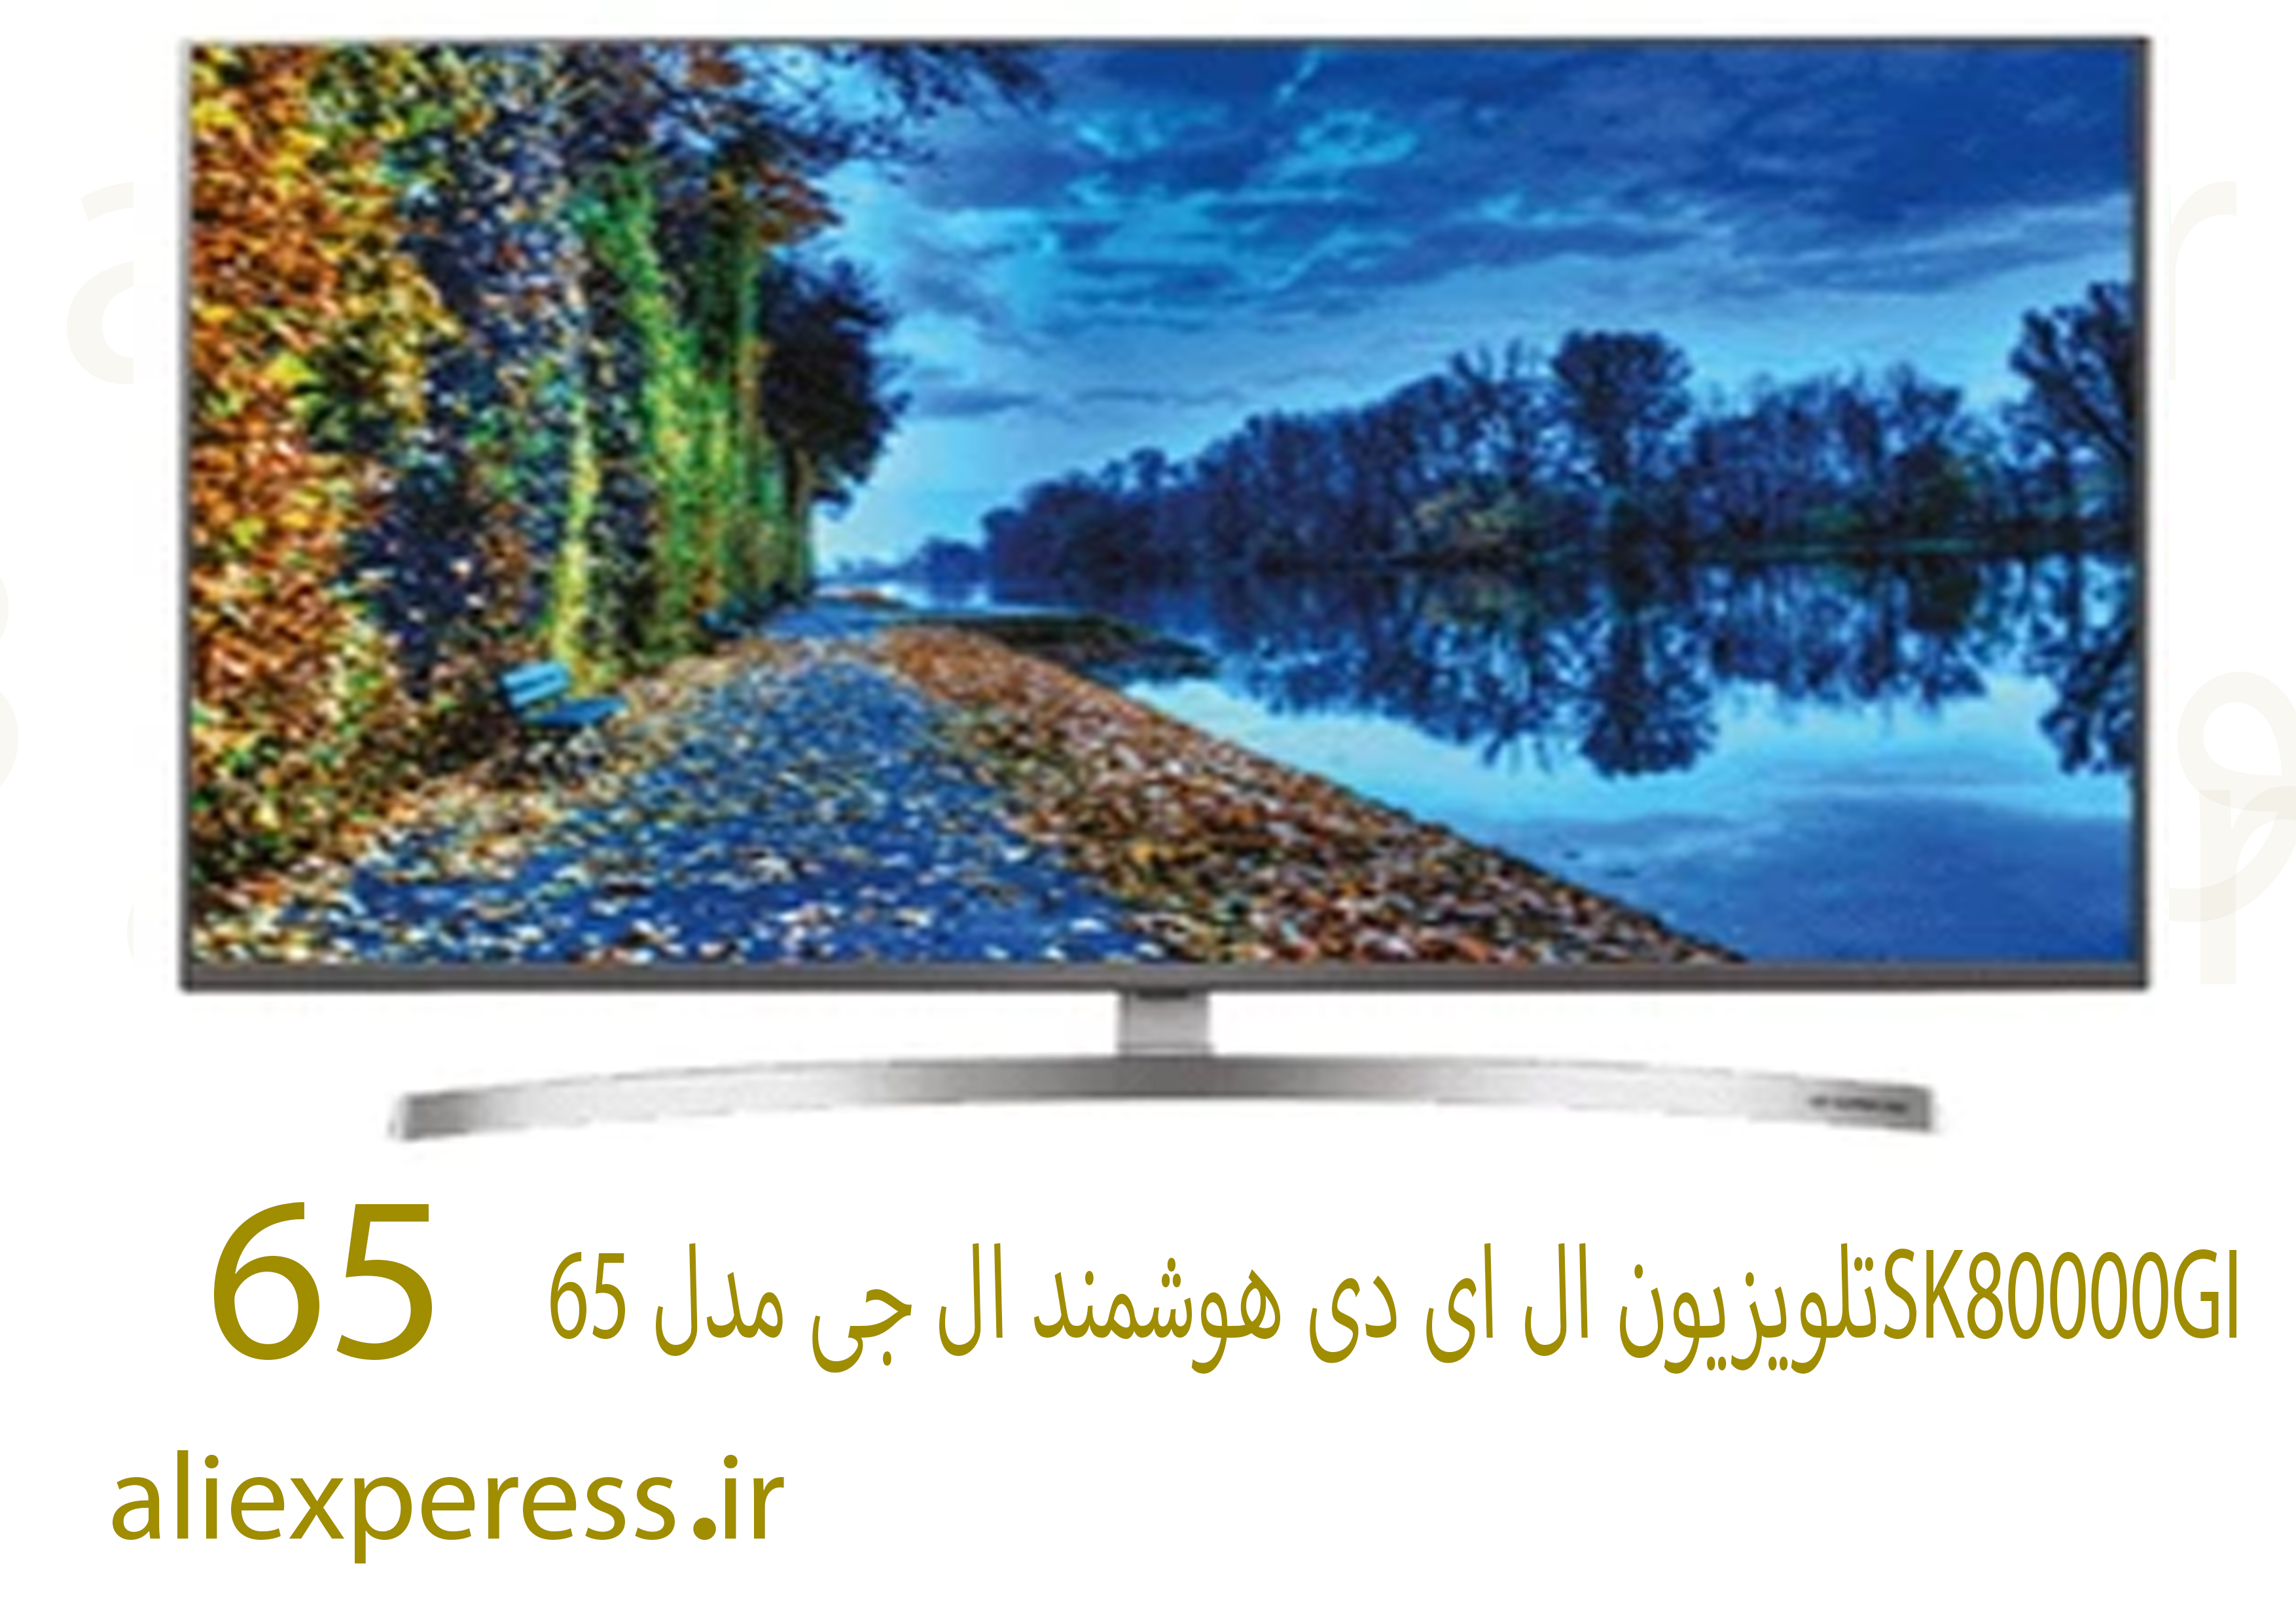 تلویزیون ال ای دی هوشمند ال جی مدل 65SK80000GI سایز 65 اینچ ا LG 65SK80000GI Smart LED TV 65 Inch